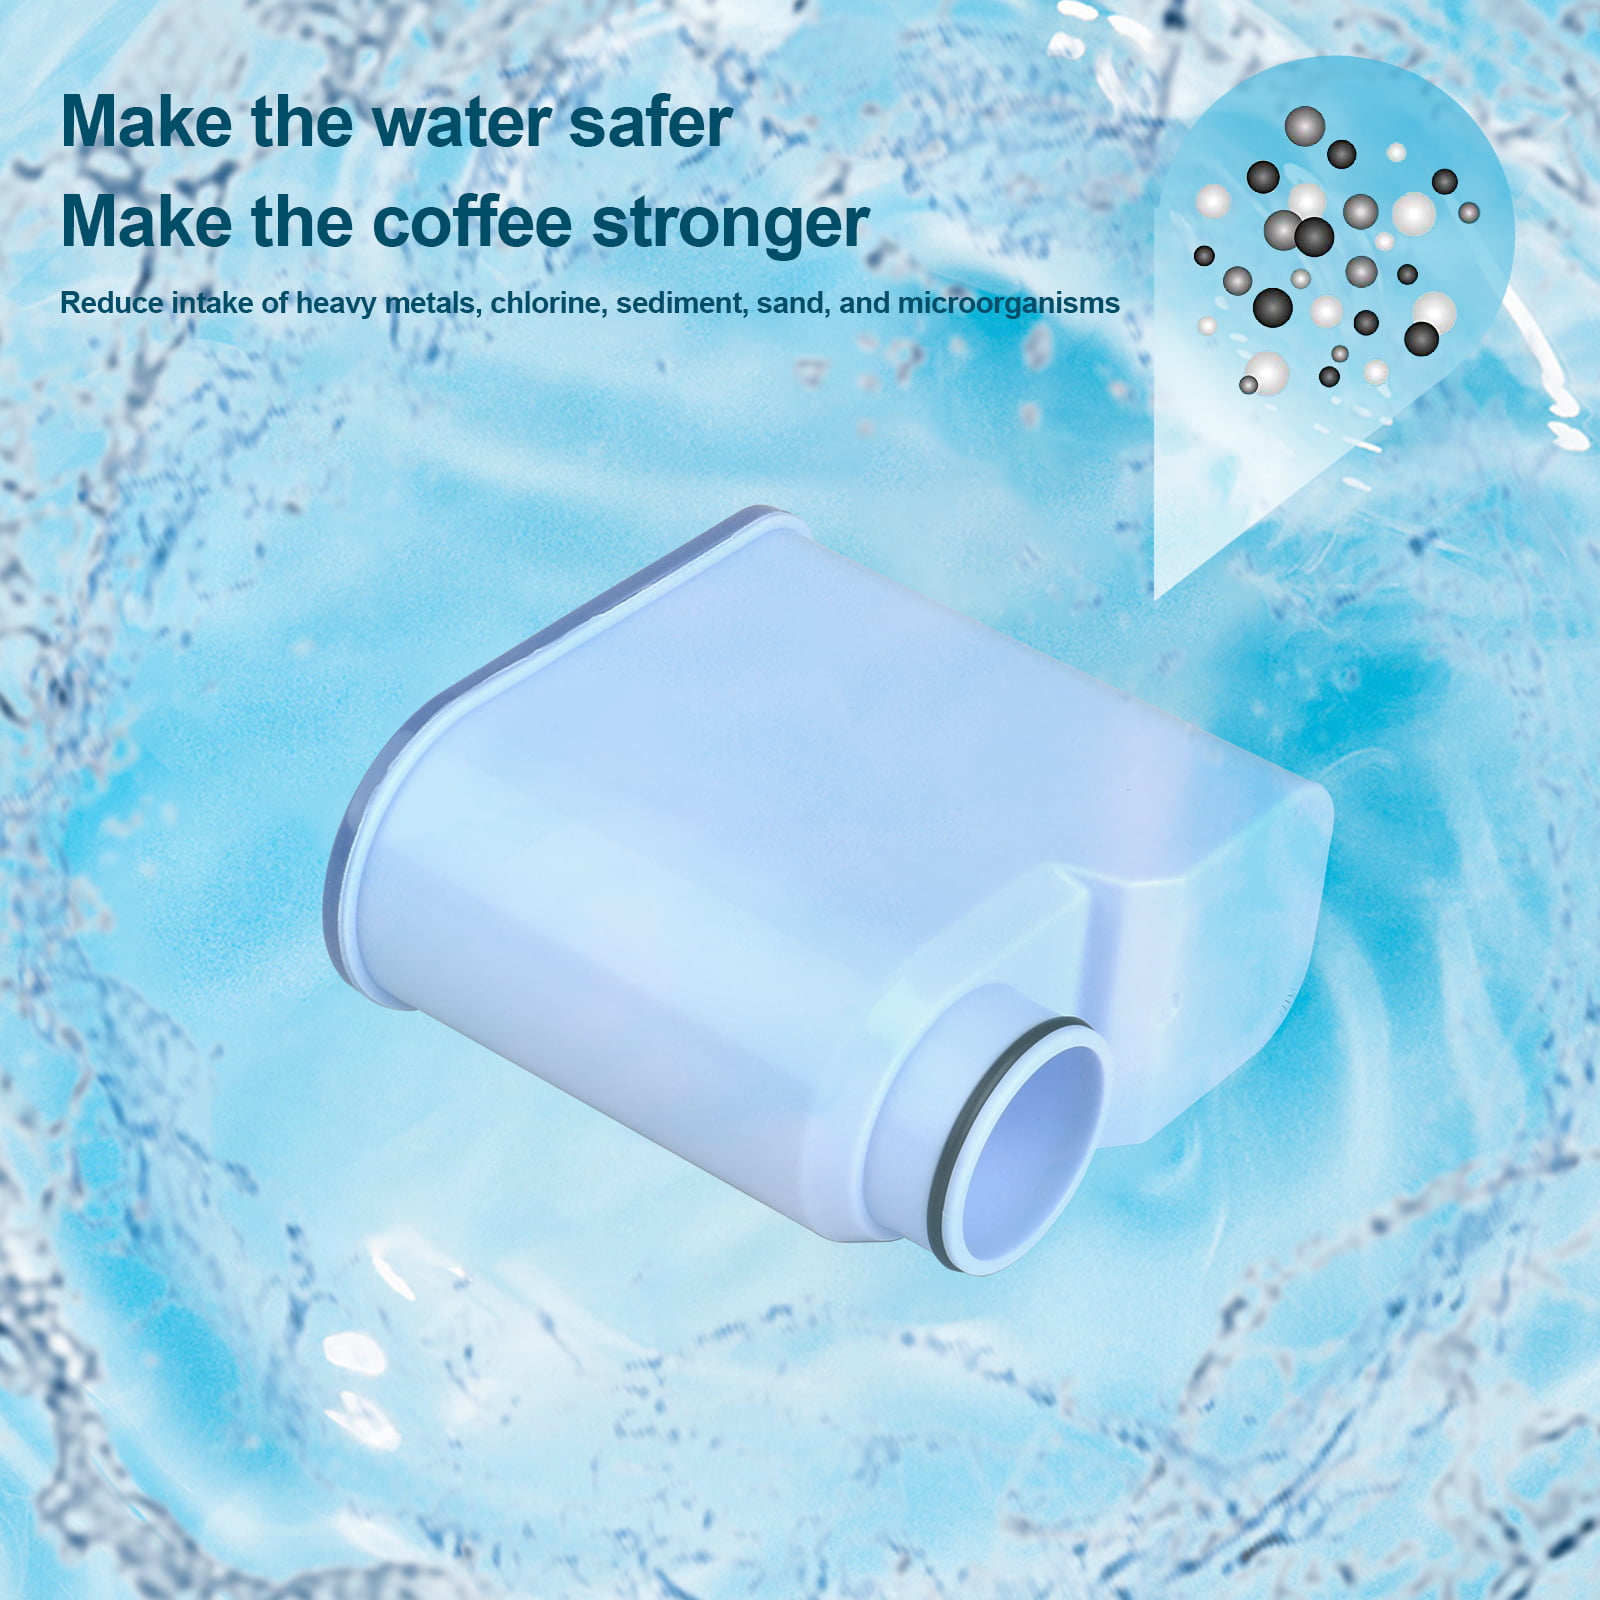 Filtre à eau compatible avec filtre anticalcaire Philips AquaClean  CA6903/10 CA6903/22